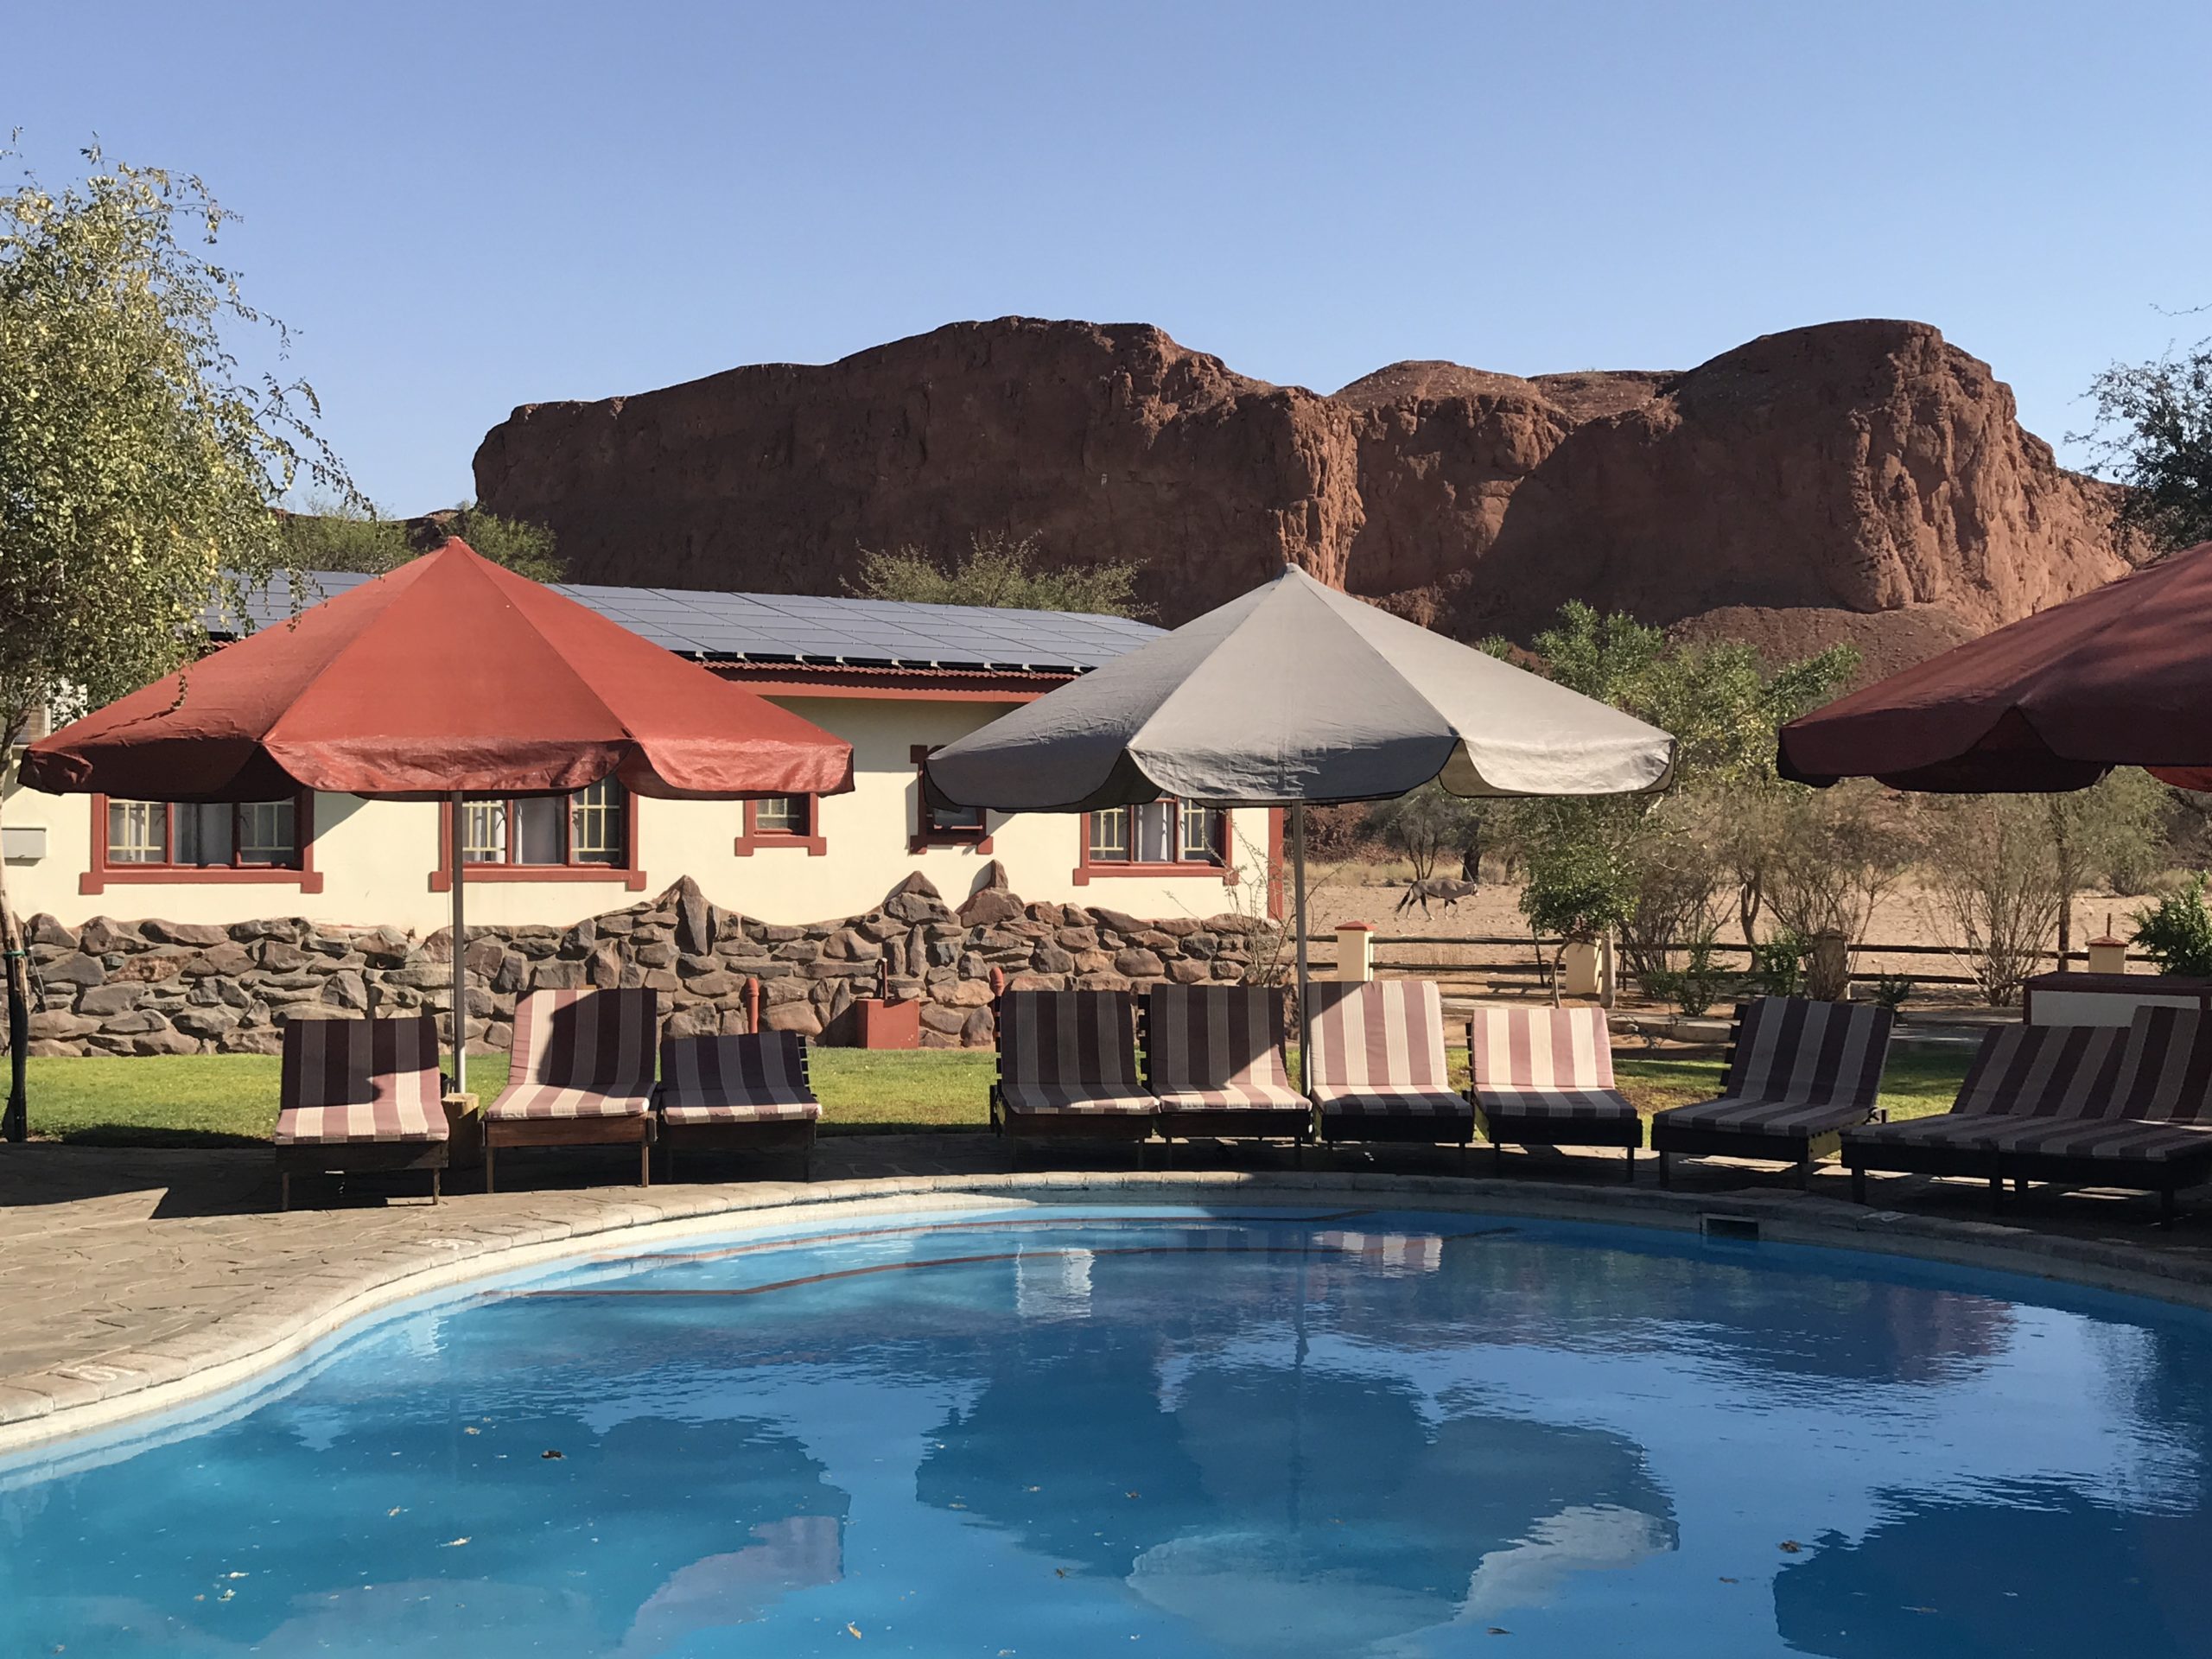 Namib Desert Lodge